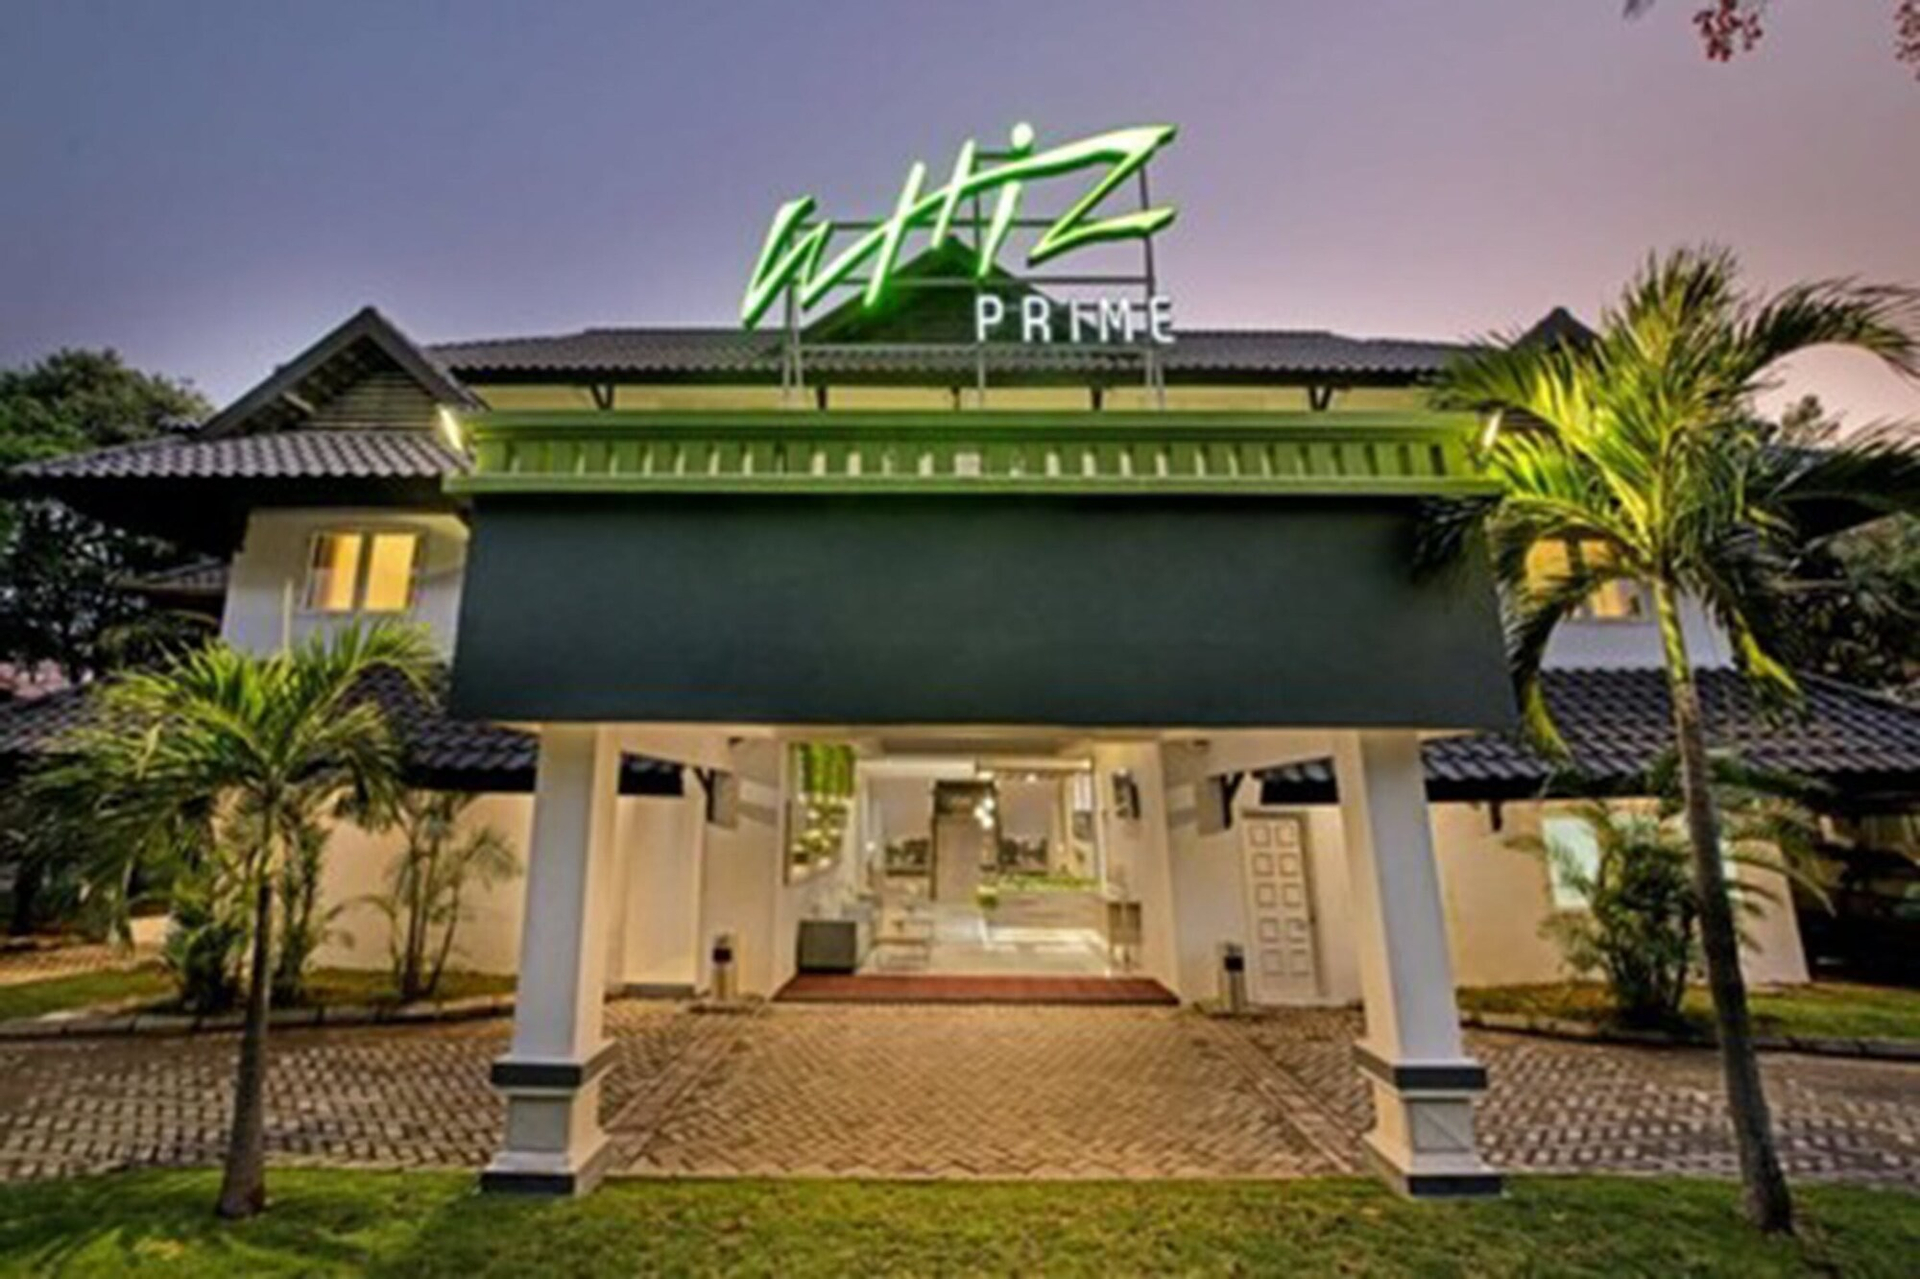 Exterior & Views 5, Whiz Prime Hotel Darmo Harapan Surabaya, Surabaya